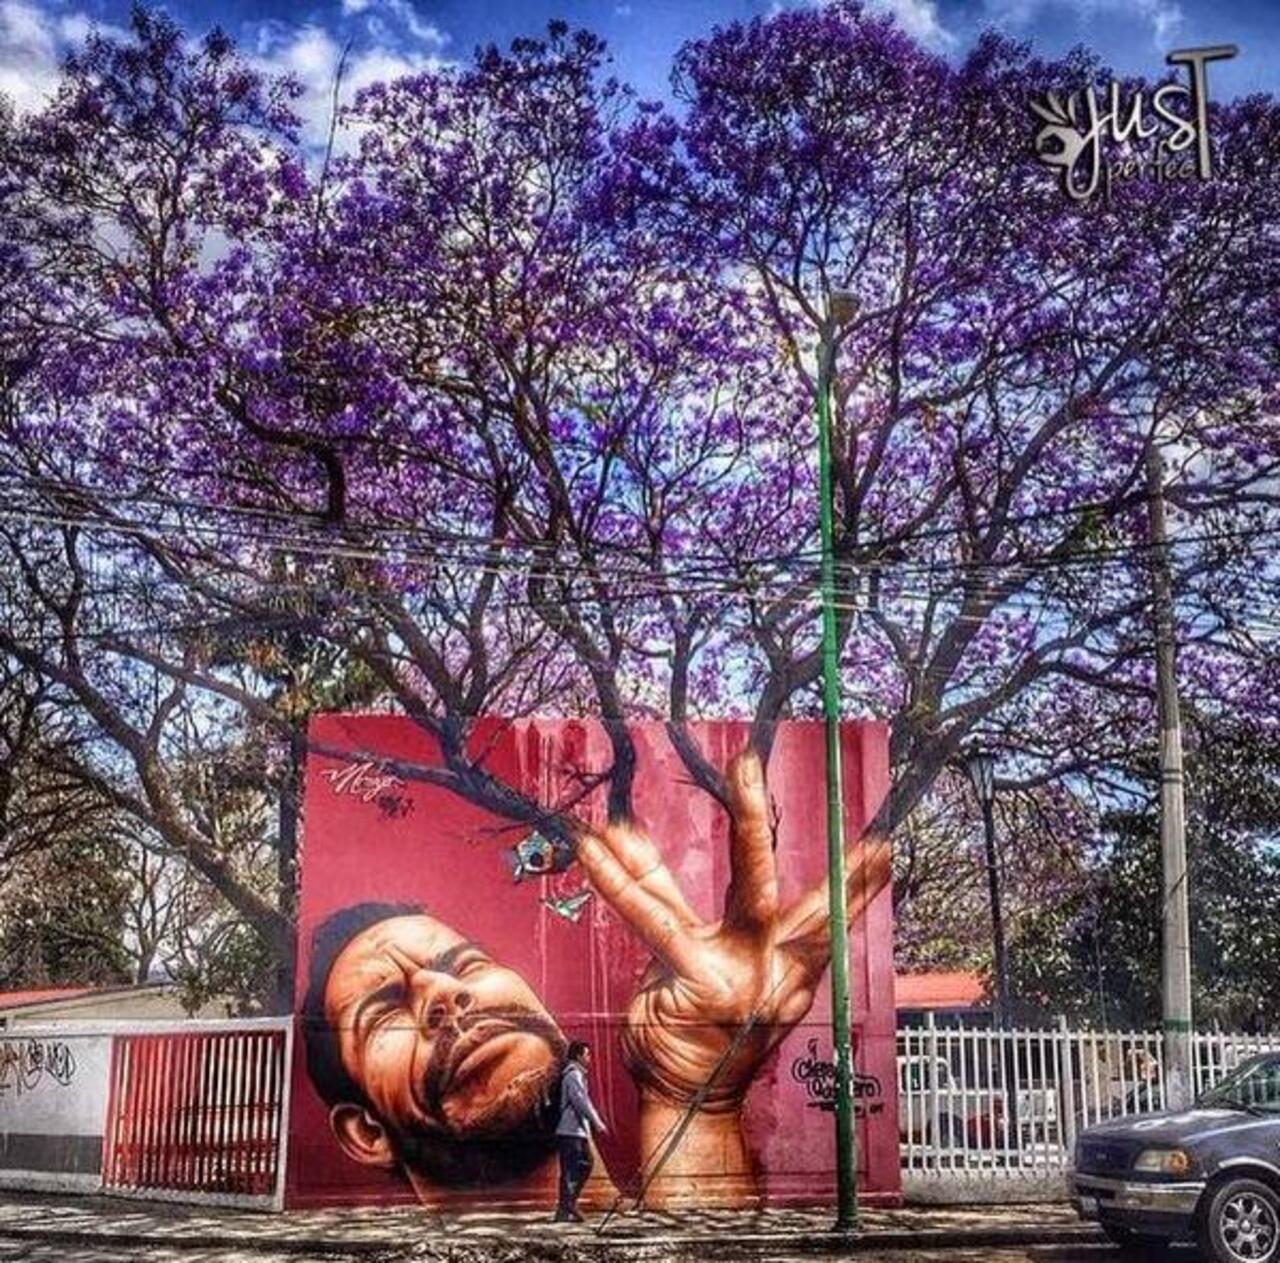 RT @upbyartists: Jose Luis Noriega
#streetart #graffiti #art #mural http://t.co/jfafh0pNZH